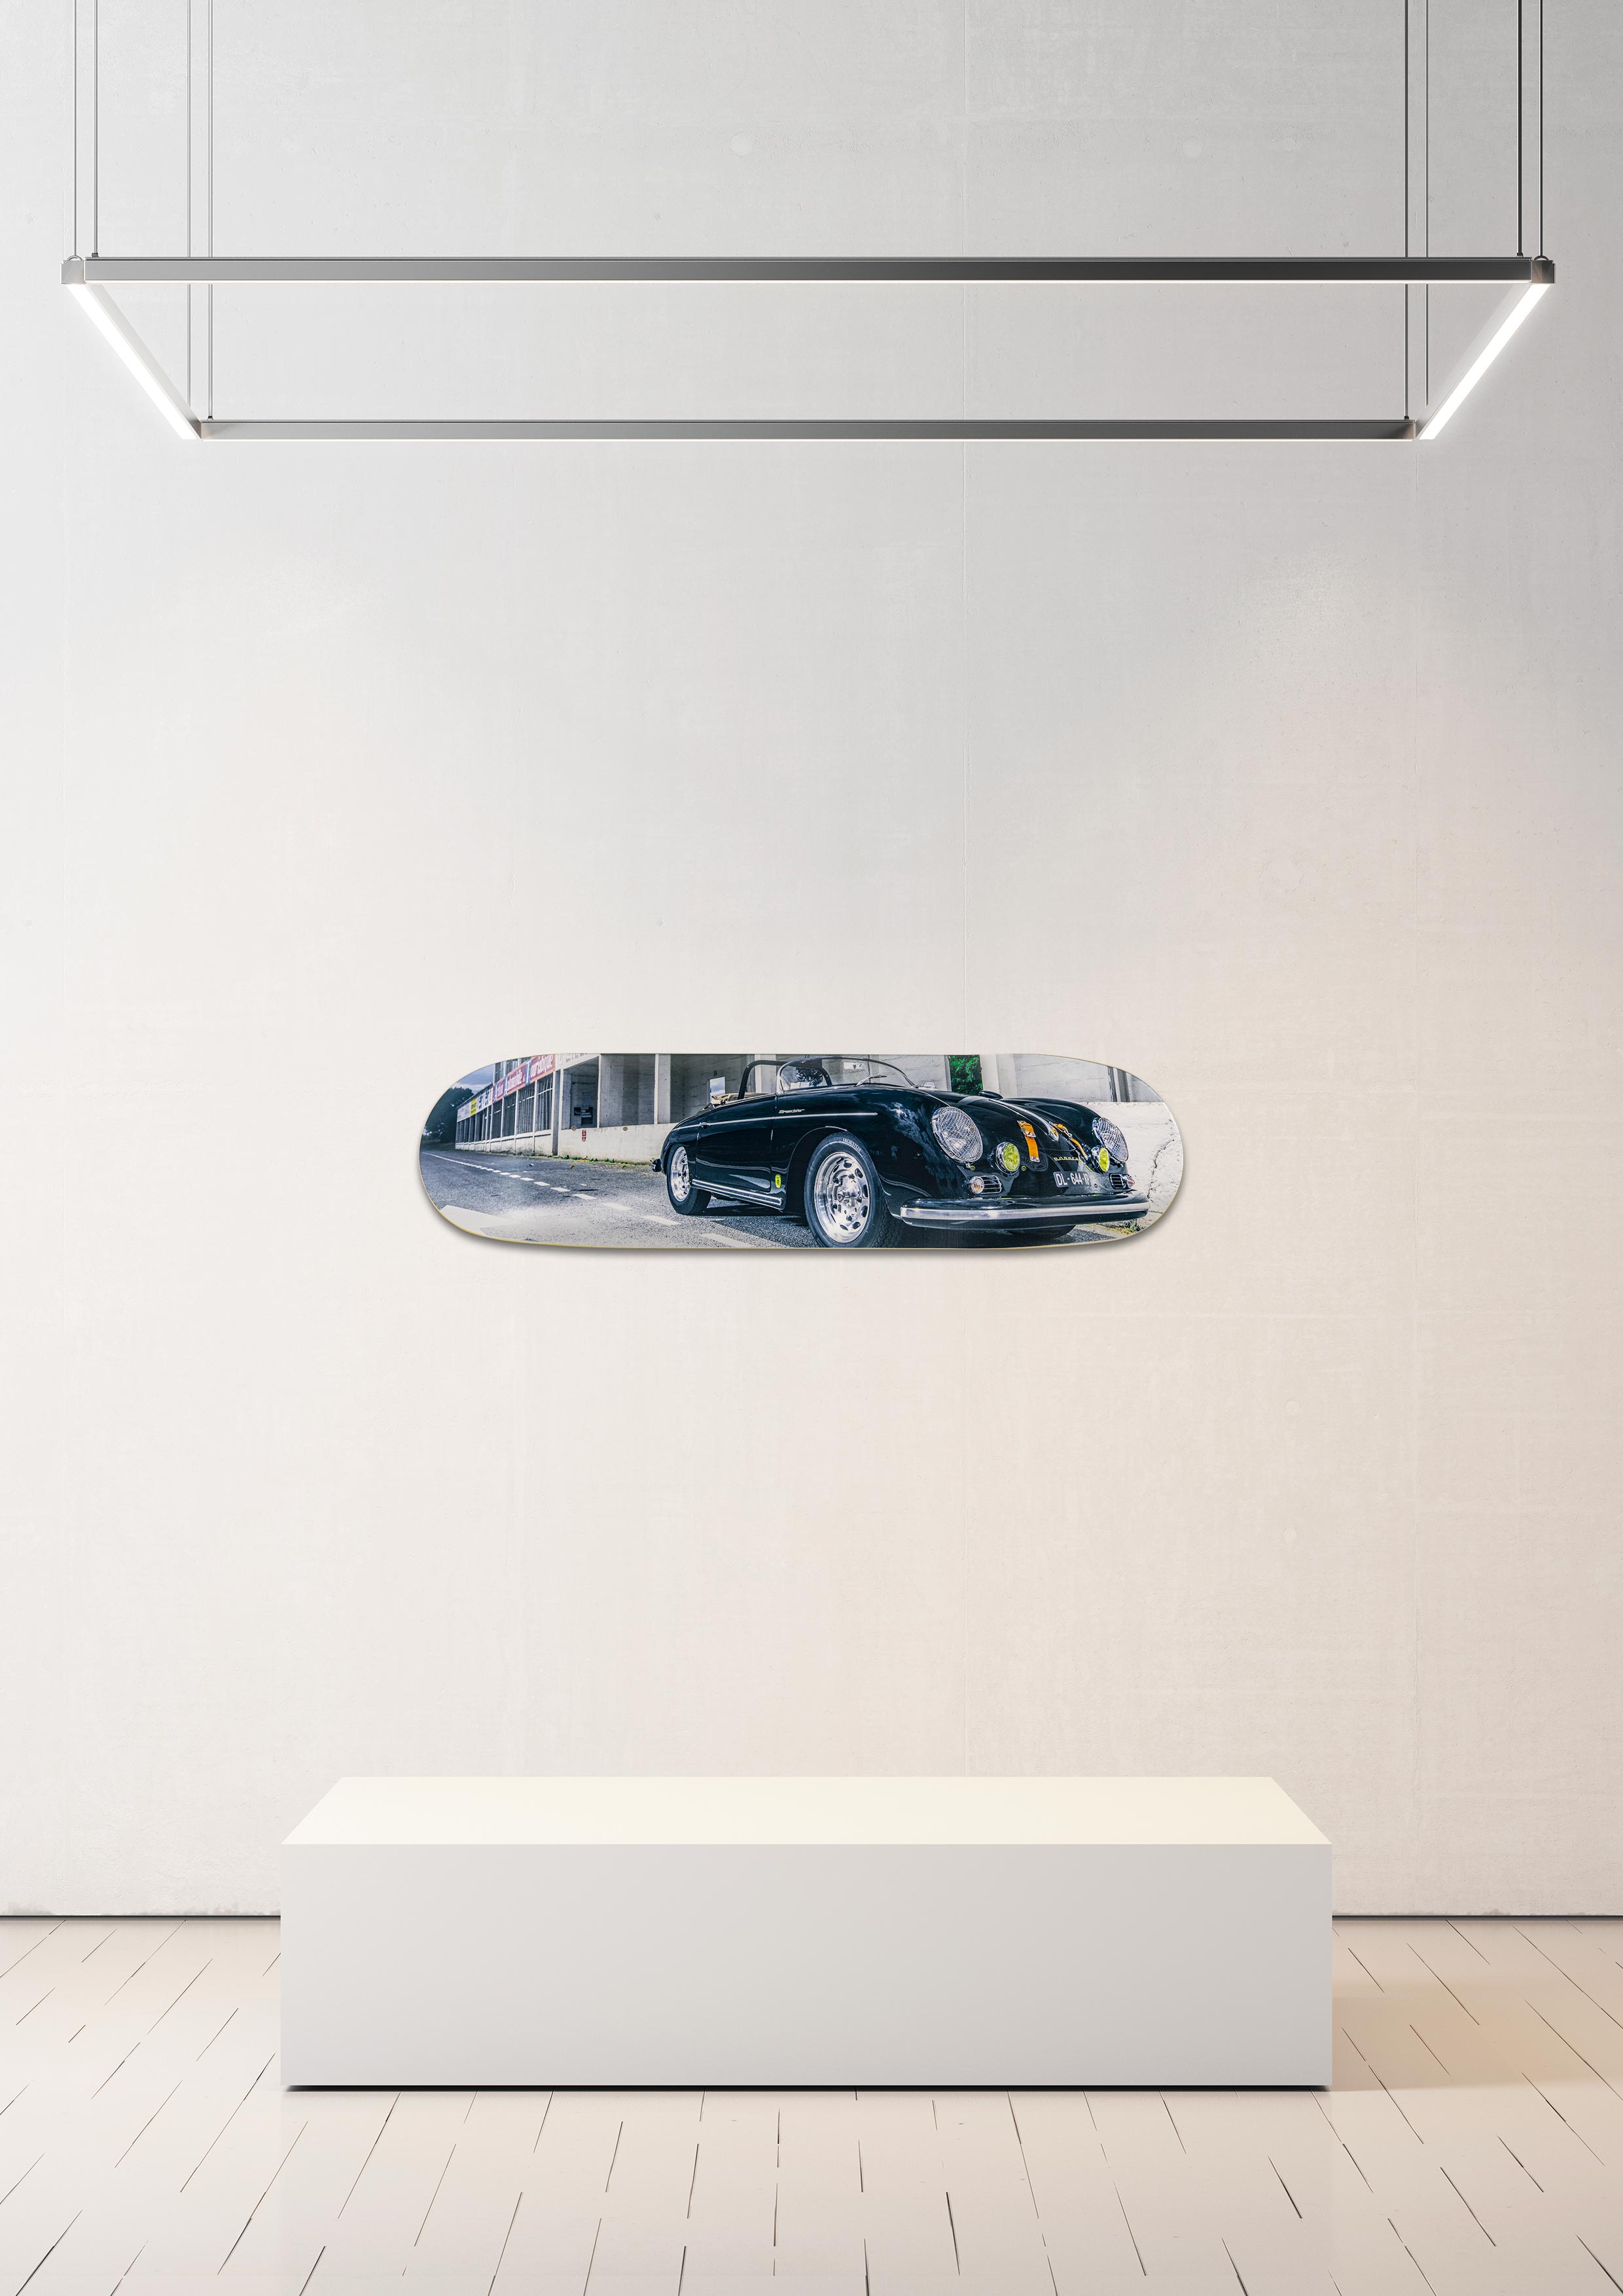 Planche de skate murale - édition très limitée Porsche 356 Speedster GT - Serge Heitz